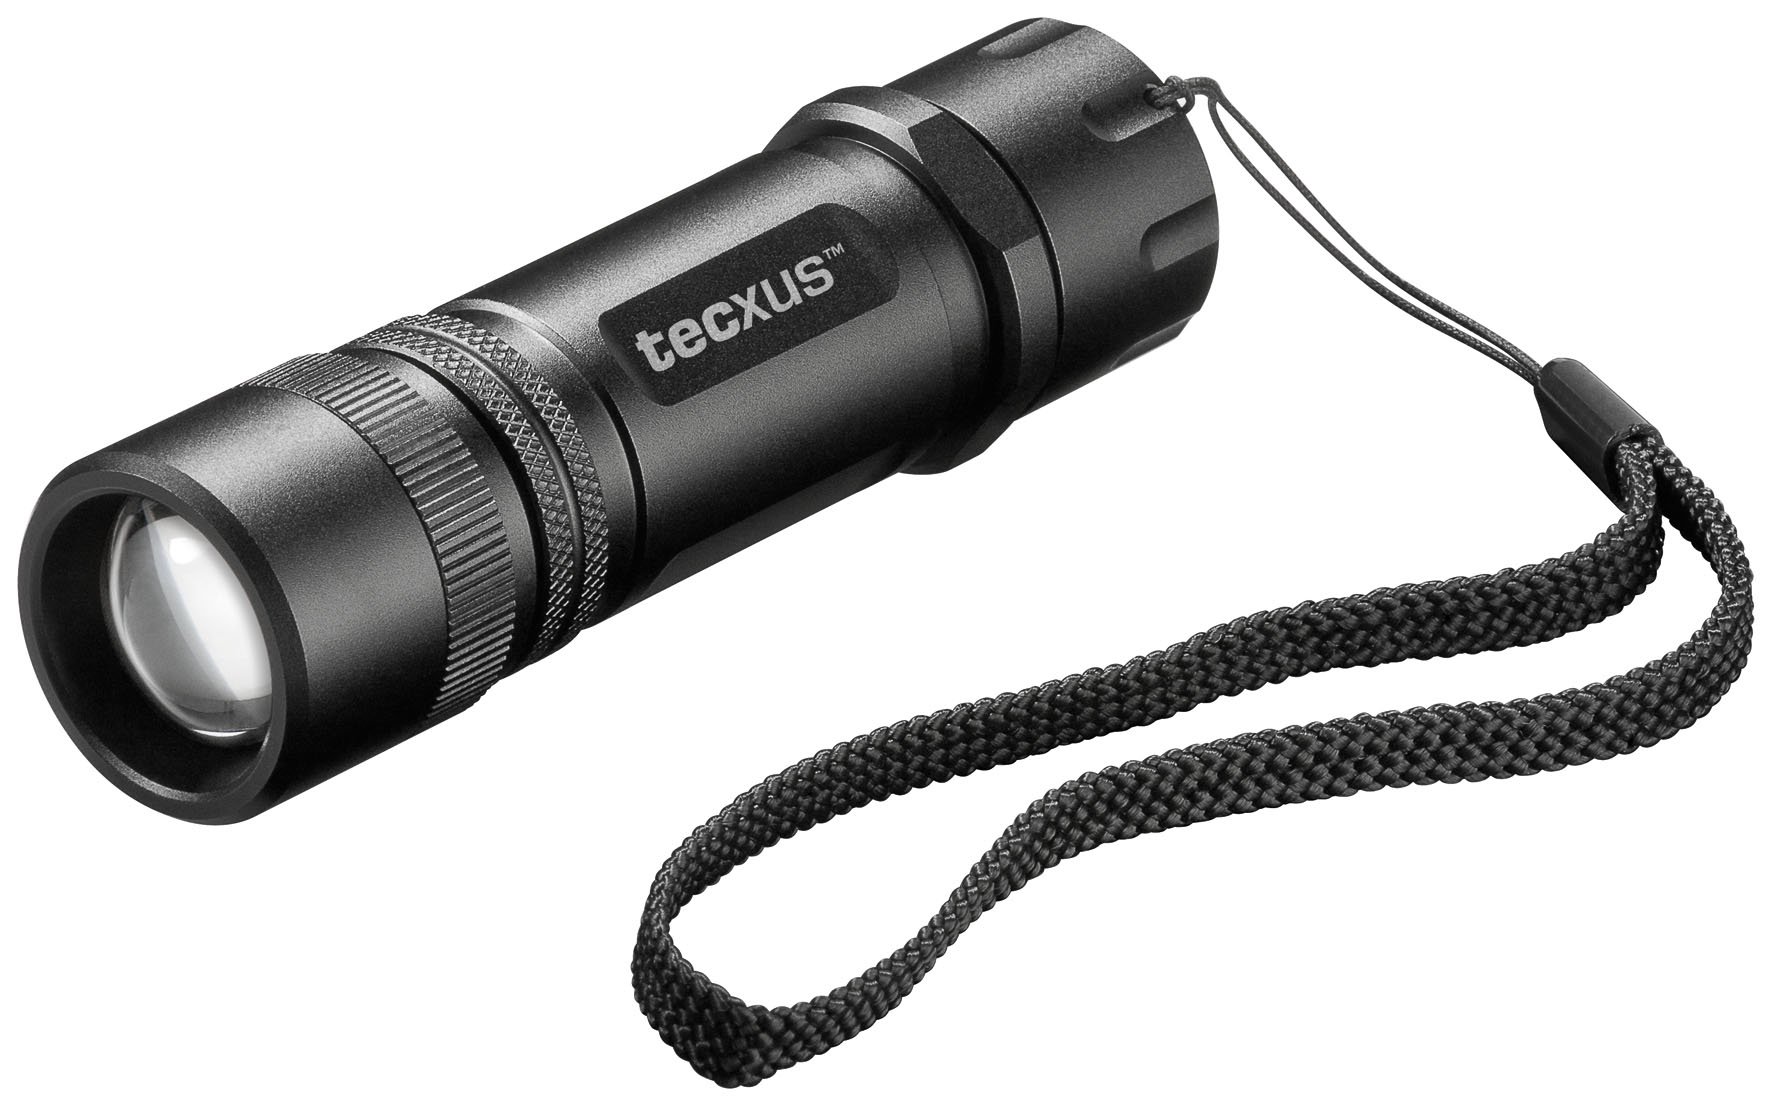 Tecxus rebellight X130 kompakte und fokussierbare LED Taschenlampe mit Dimmfunktion